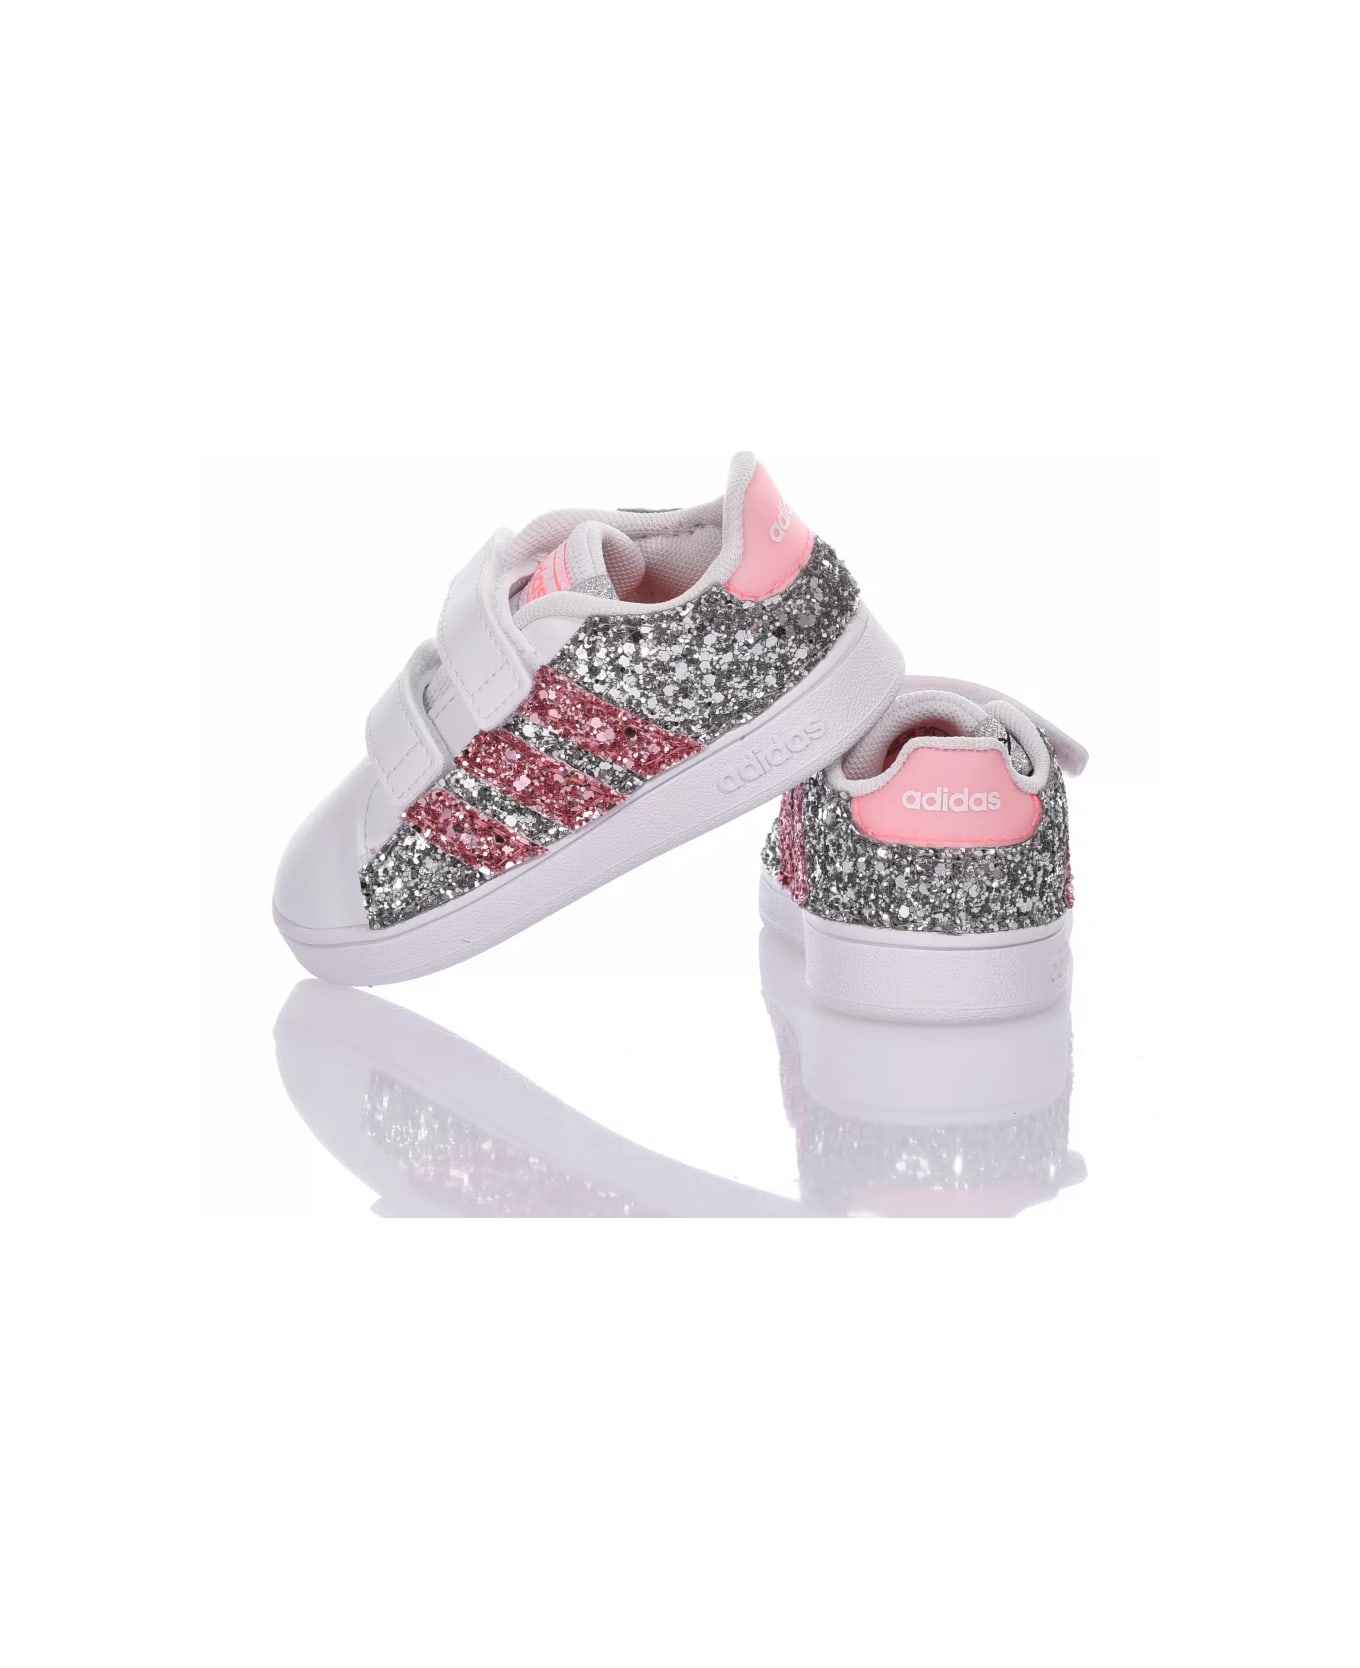 Mimanera Adidas Baby Glitter Pink Customized Mimanera